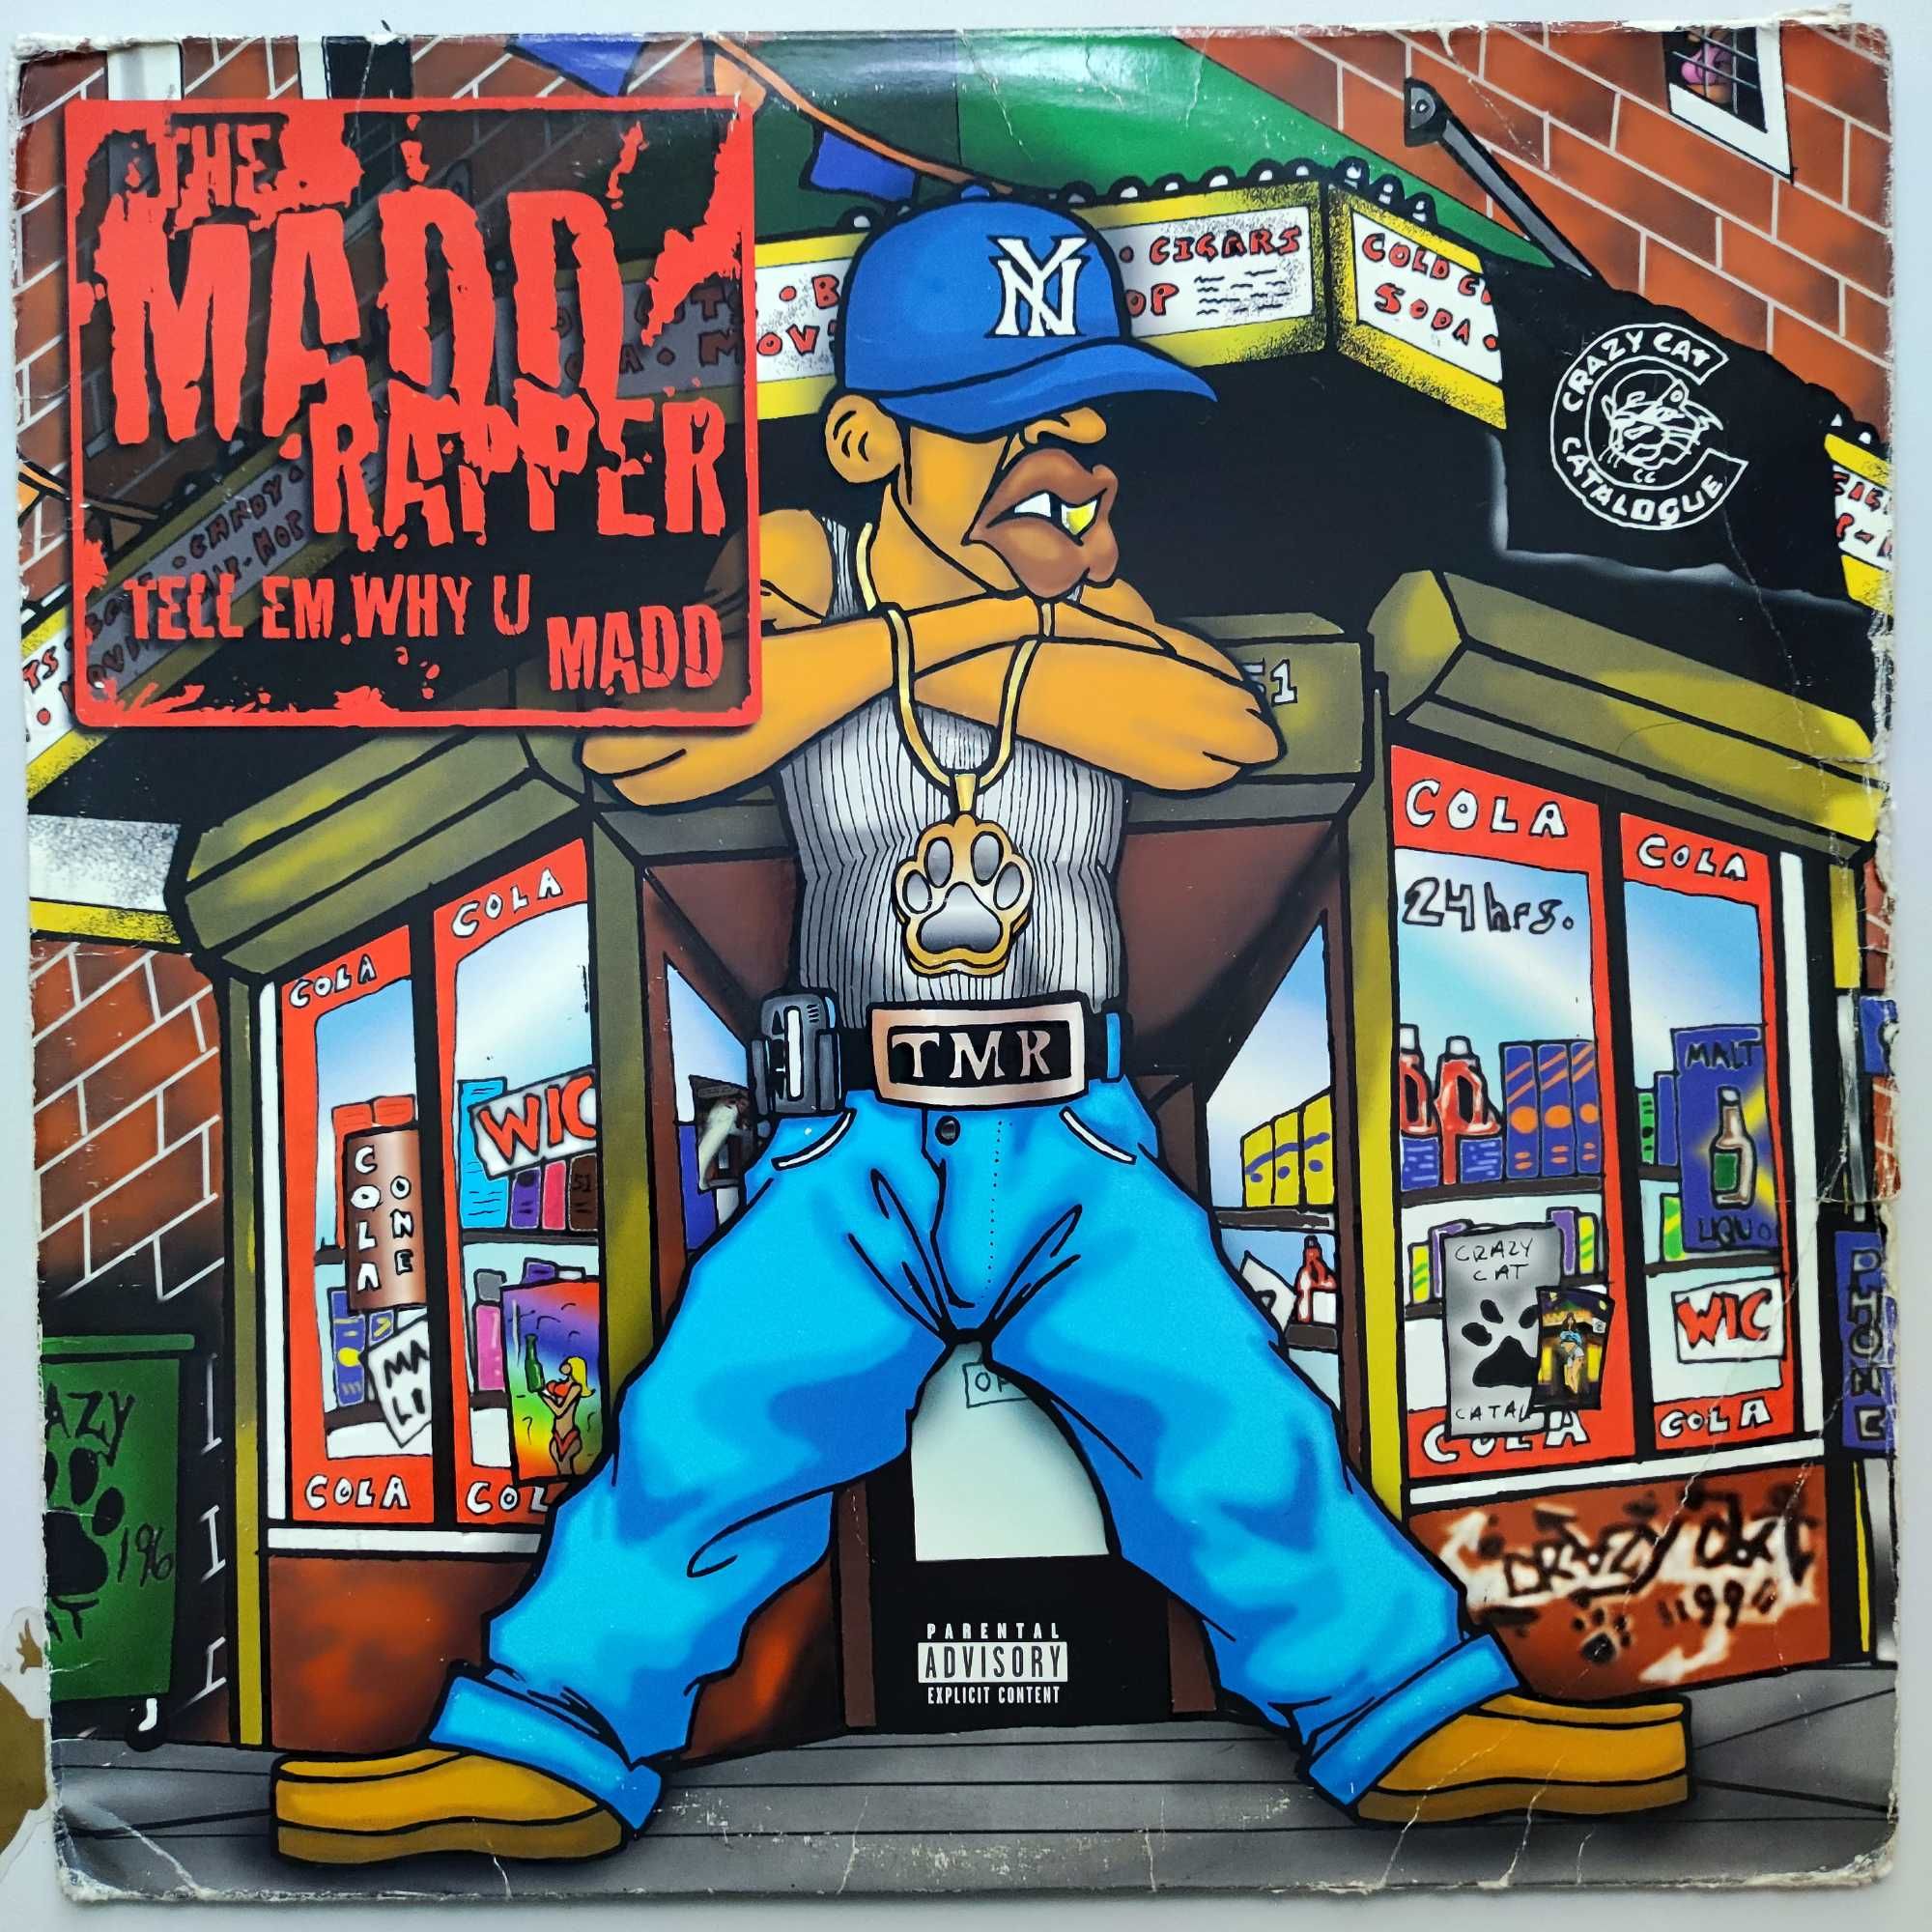 MADD RAPPER - Tell Em Why U Madd (wyd. 1999r, ALBUM) LP 12" WINYL